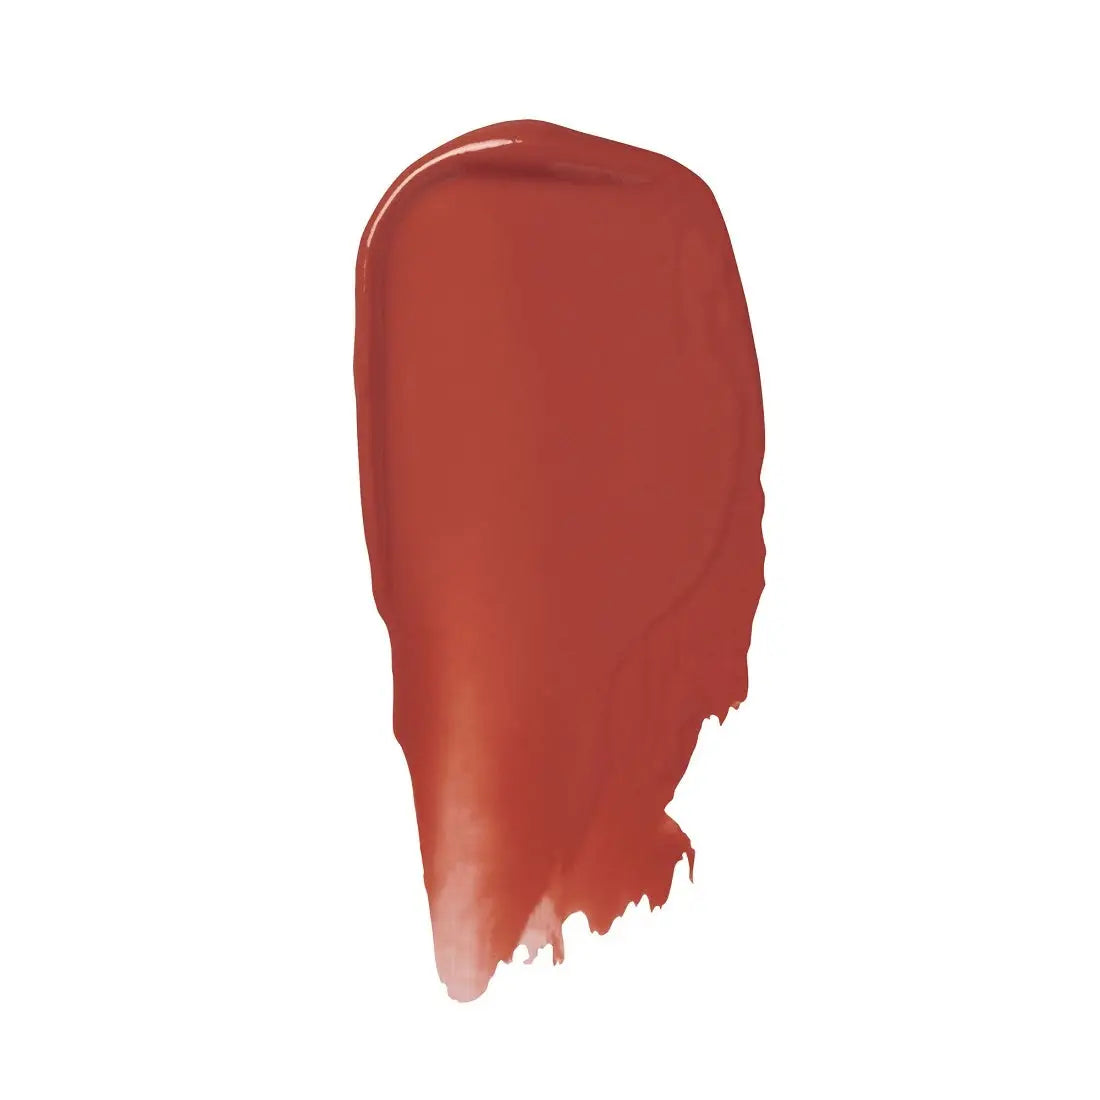 Ilia Beauty Colour Haze Multi-Matte Pigment 7ml - Stutter 